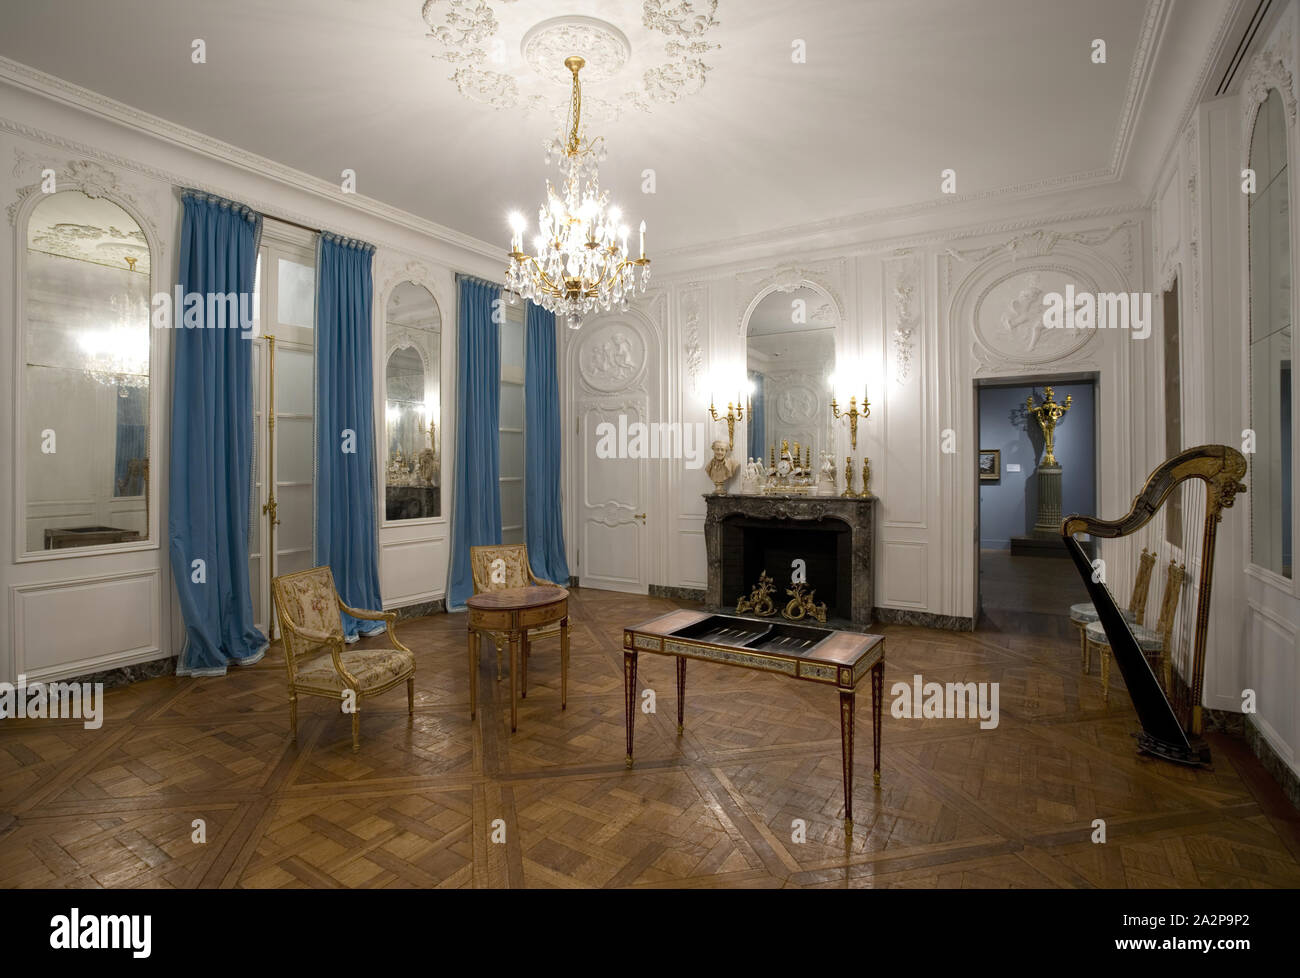 Inconnu (français), le Grand Salon, entre 1760 et 1770, chêne peint, miroir (principalement de nouvelles), papier mâché dessus, cheminée en marbre, diverses dimensions Banque D'Images